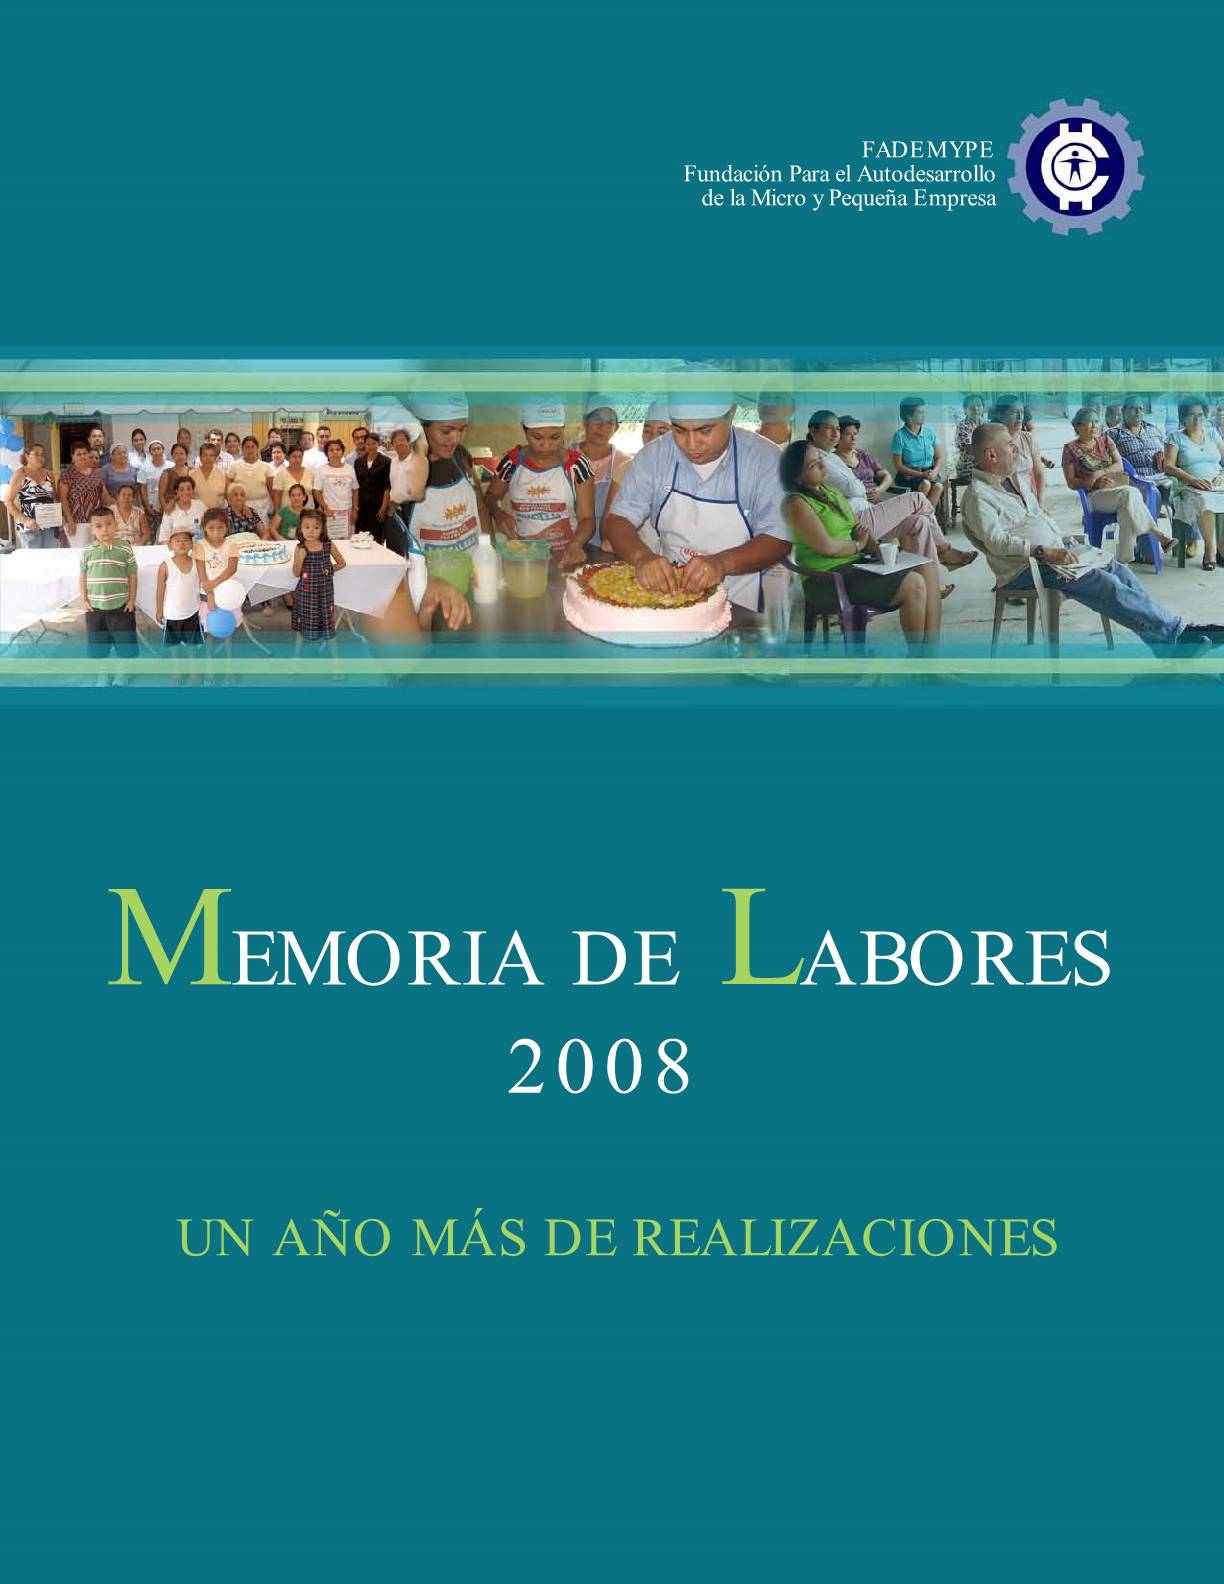 Memoria de labores 2008